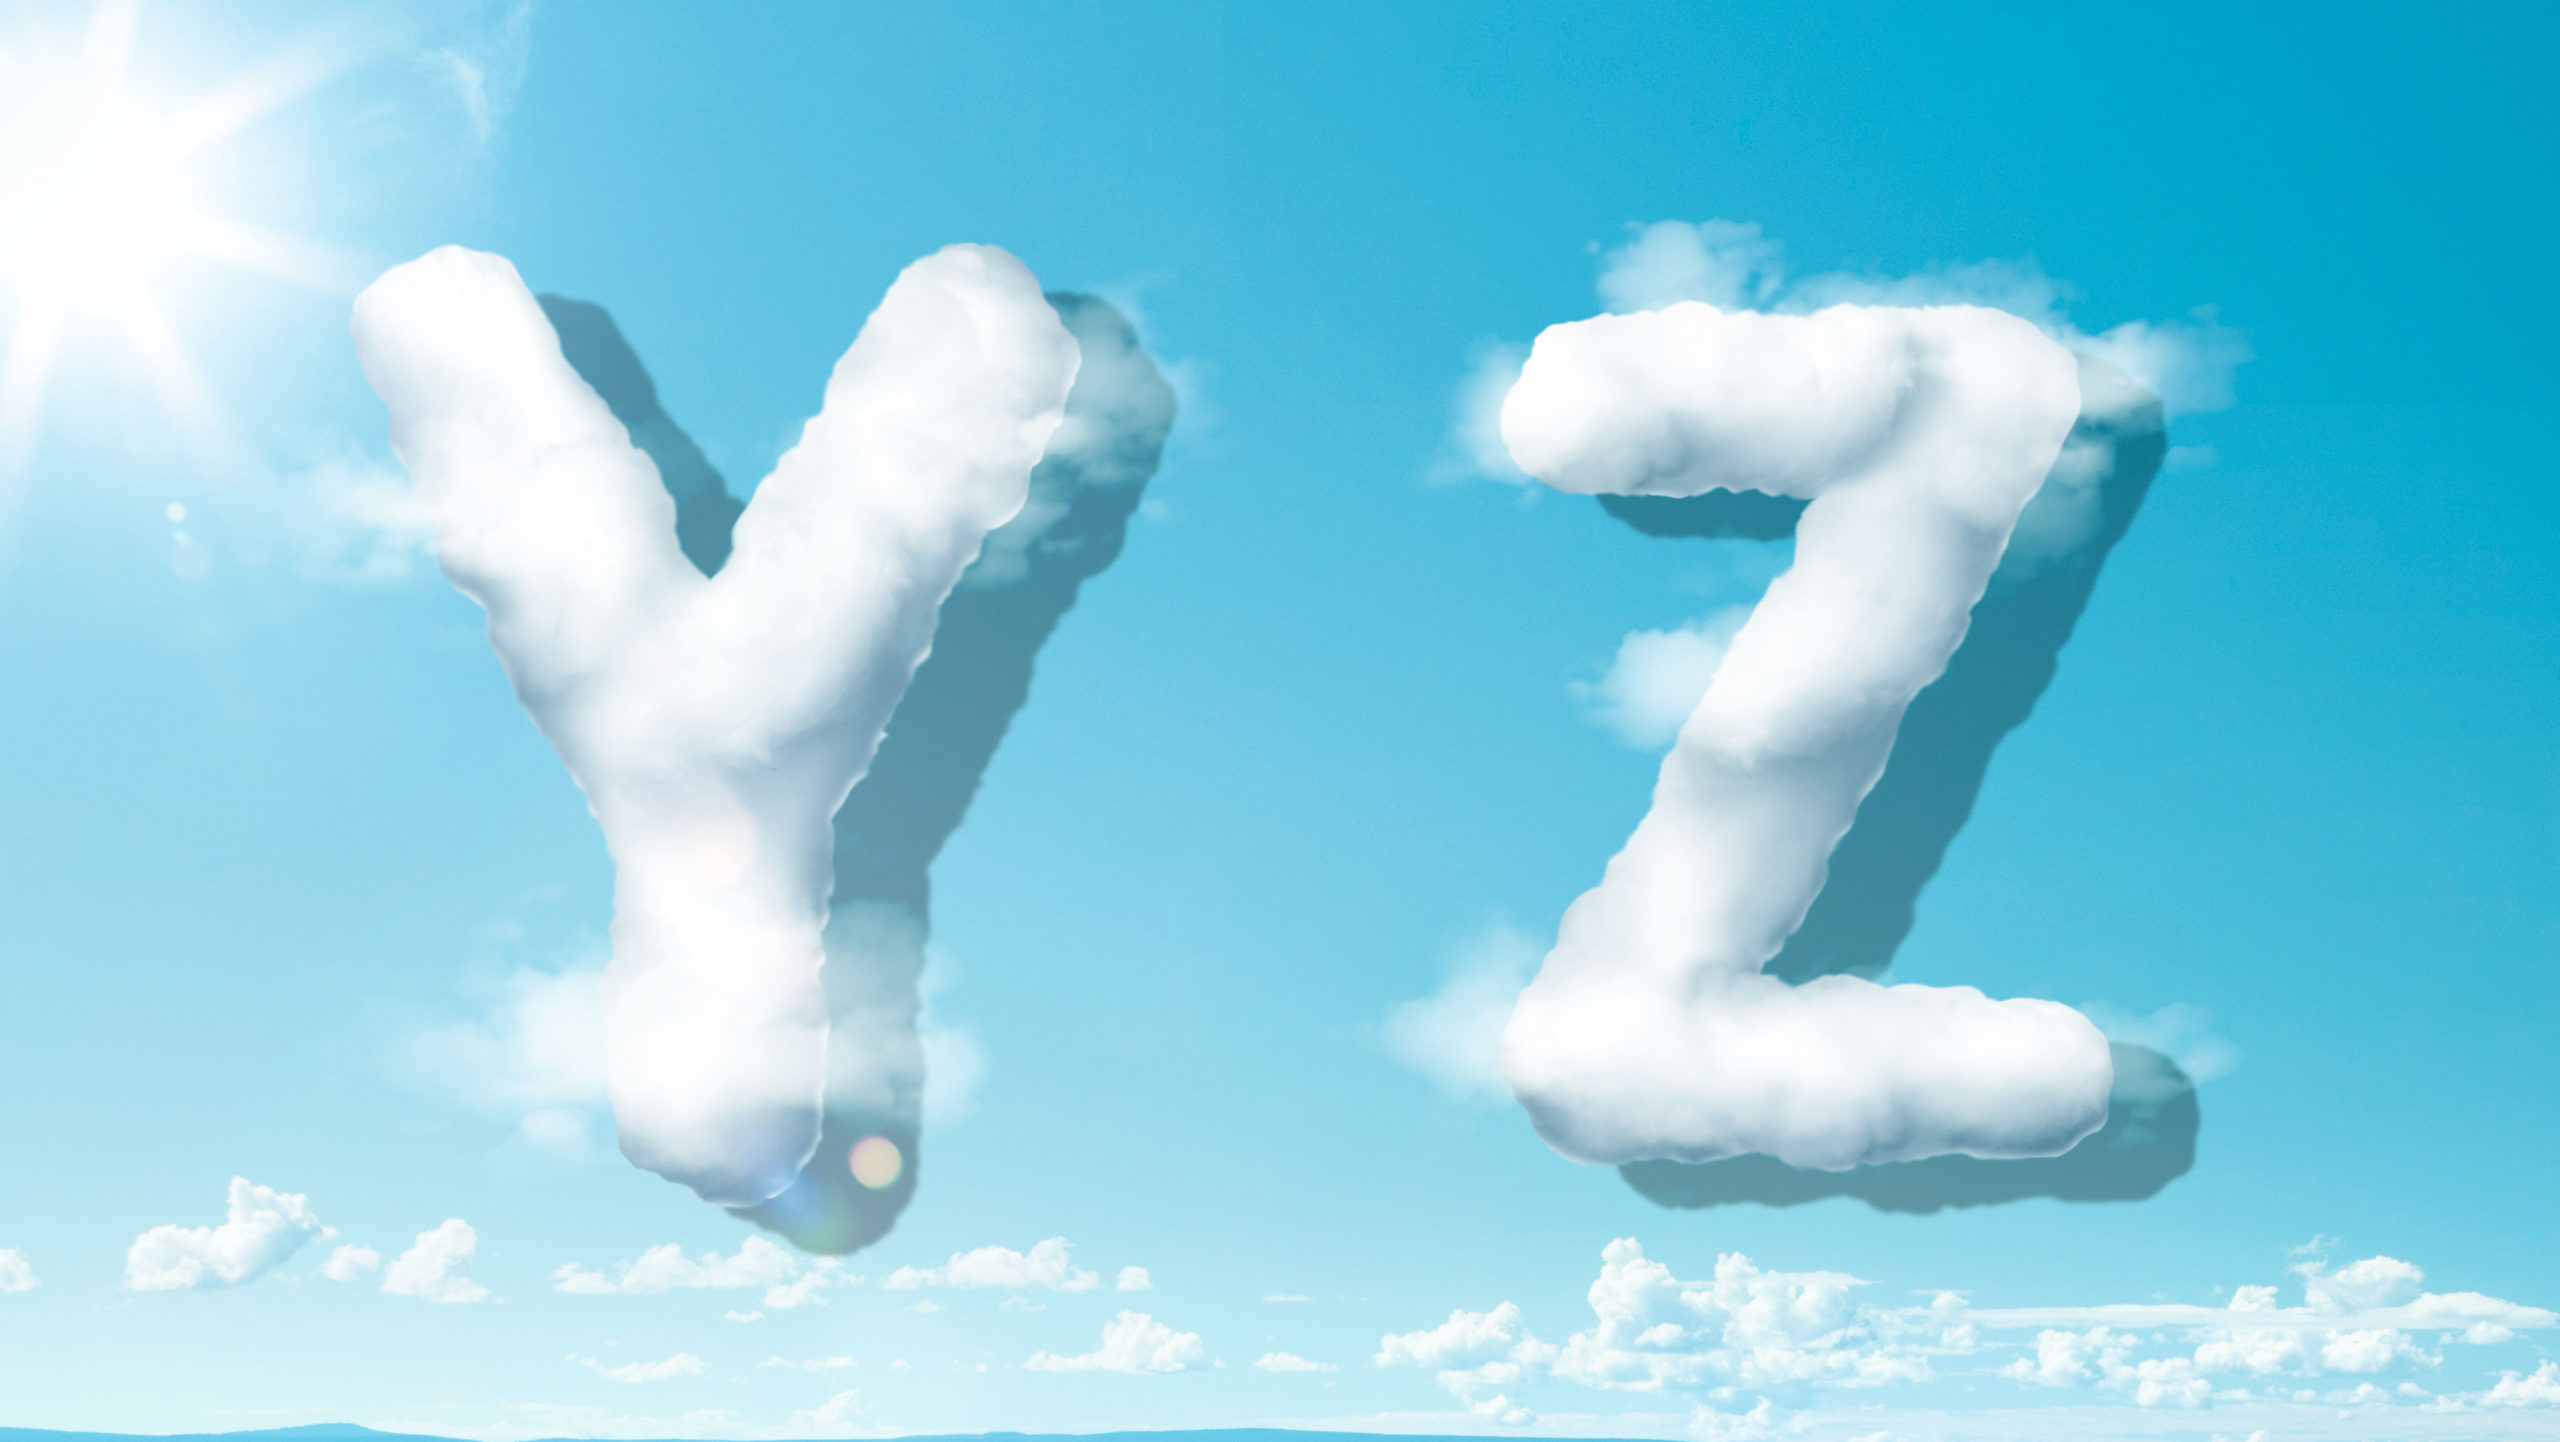 字母“YZ”蓝天背景白云英文艺术字体素材中国精选PSD素材插图